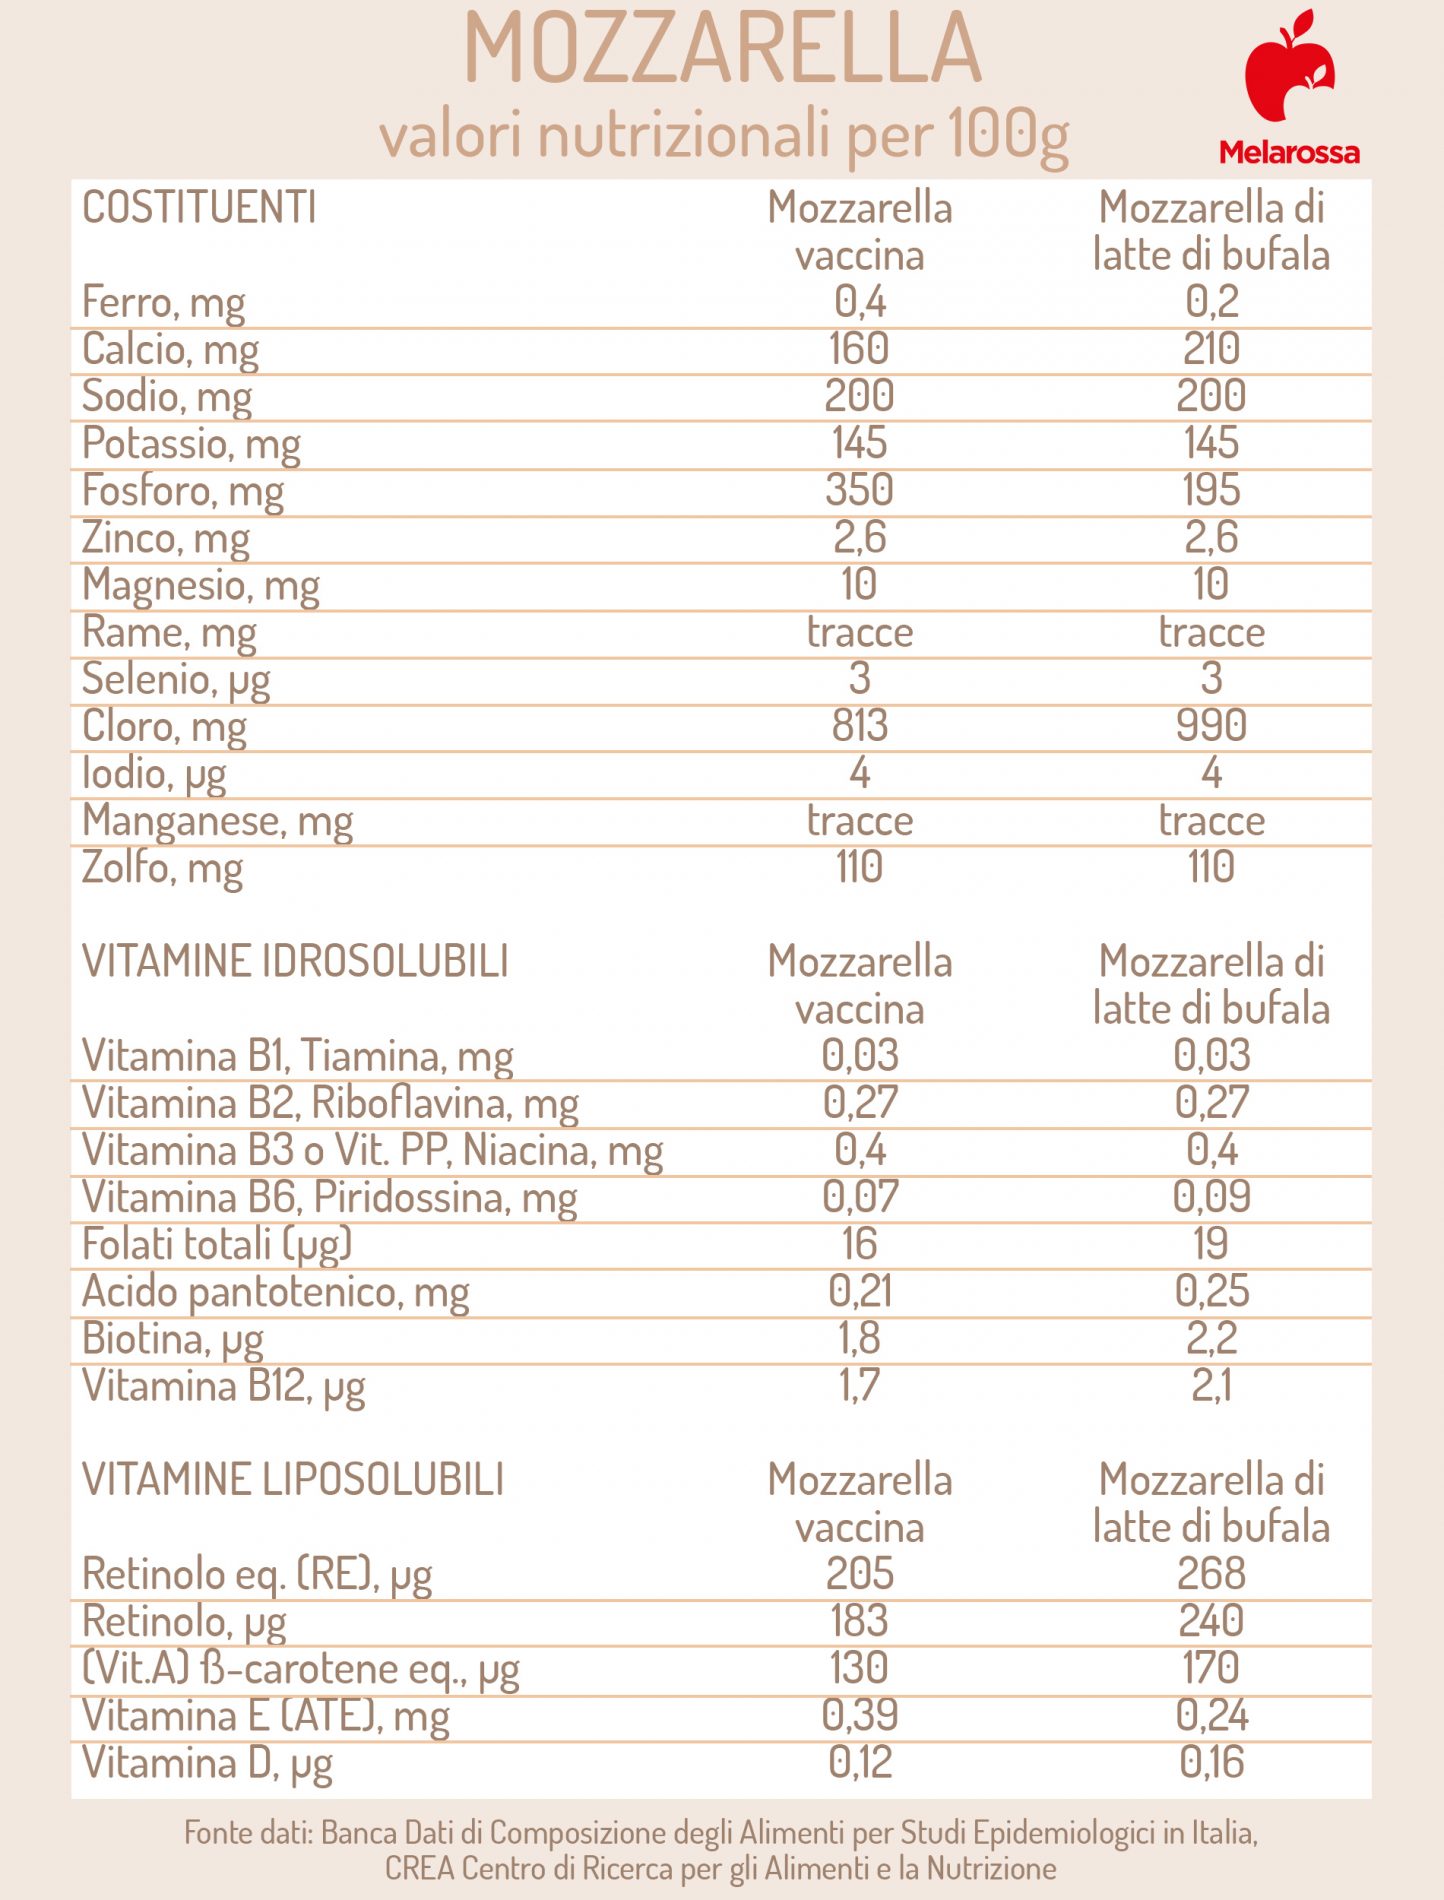 mozzarella: valori nutrizionali 